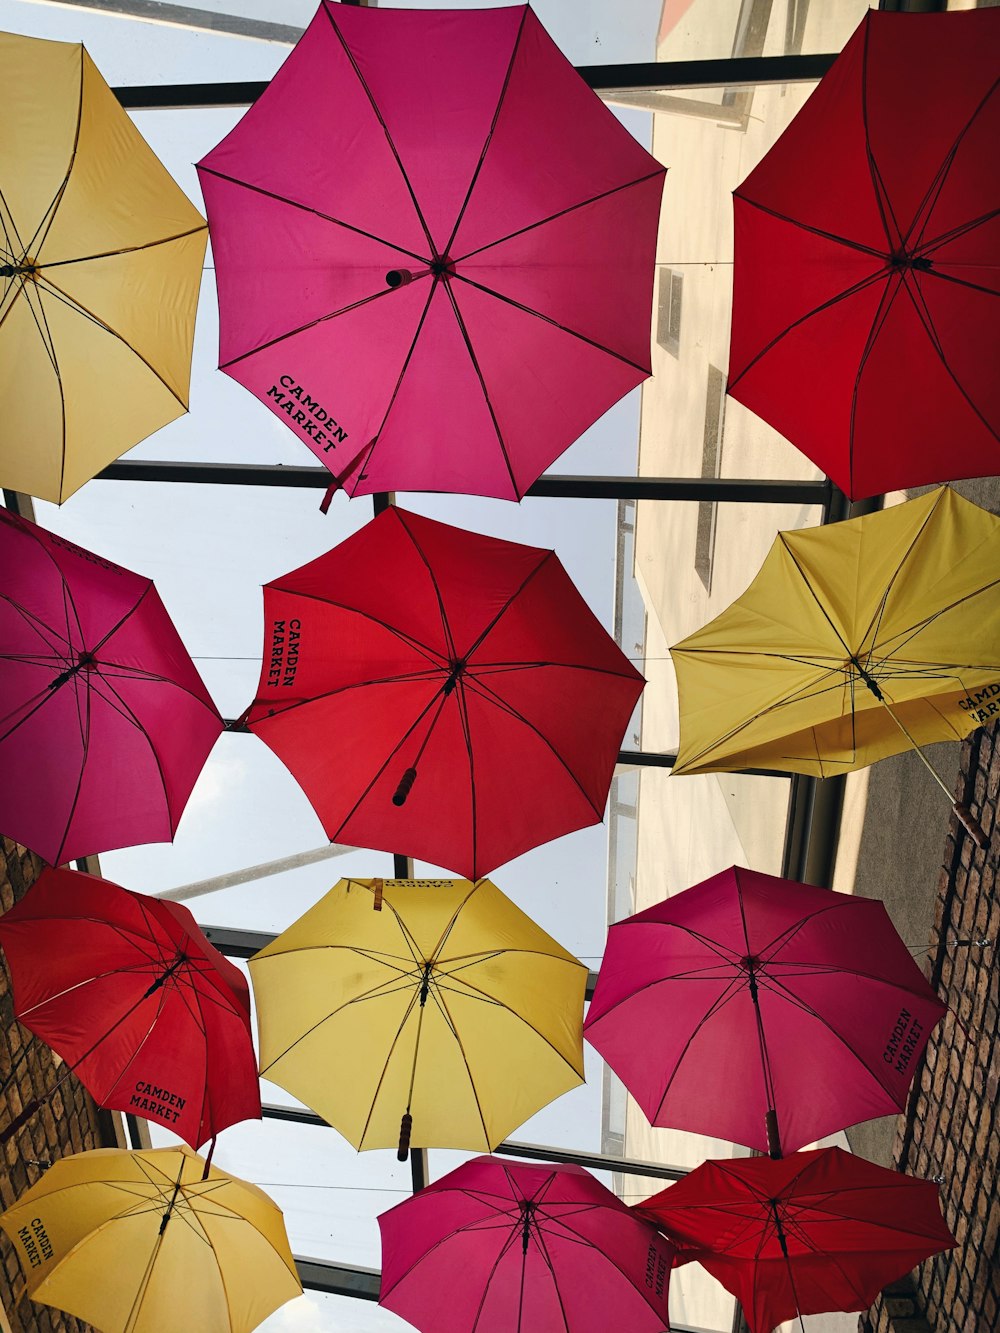 red umbrella on white umbrella